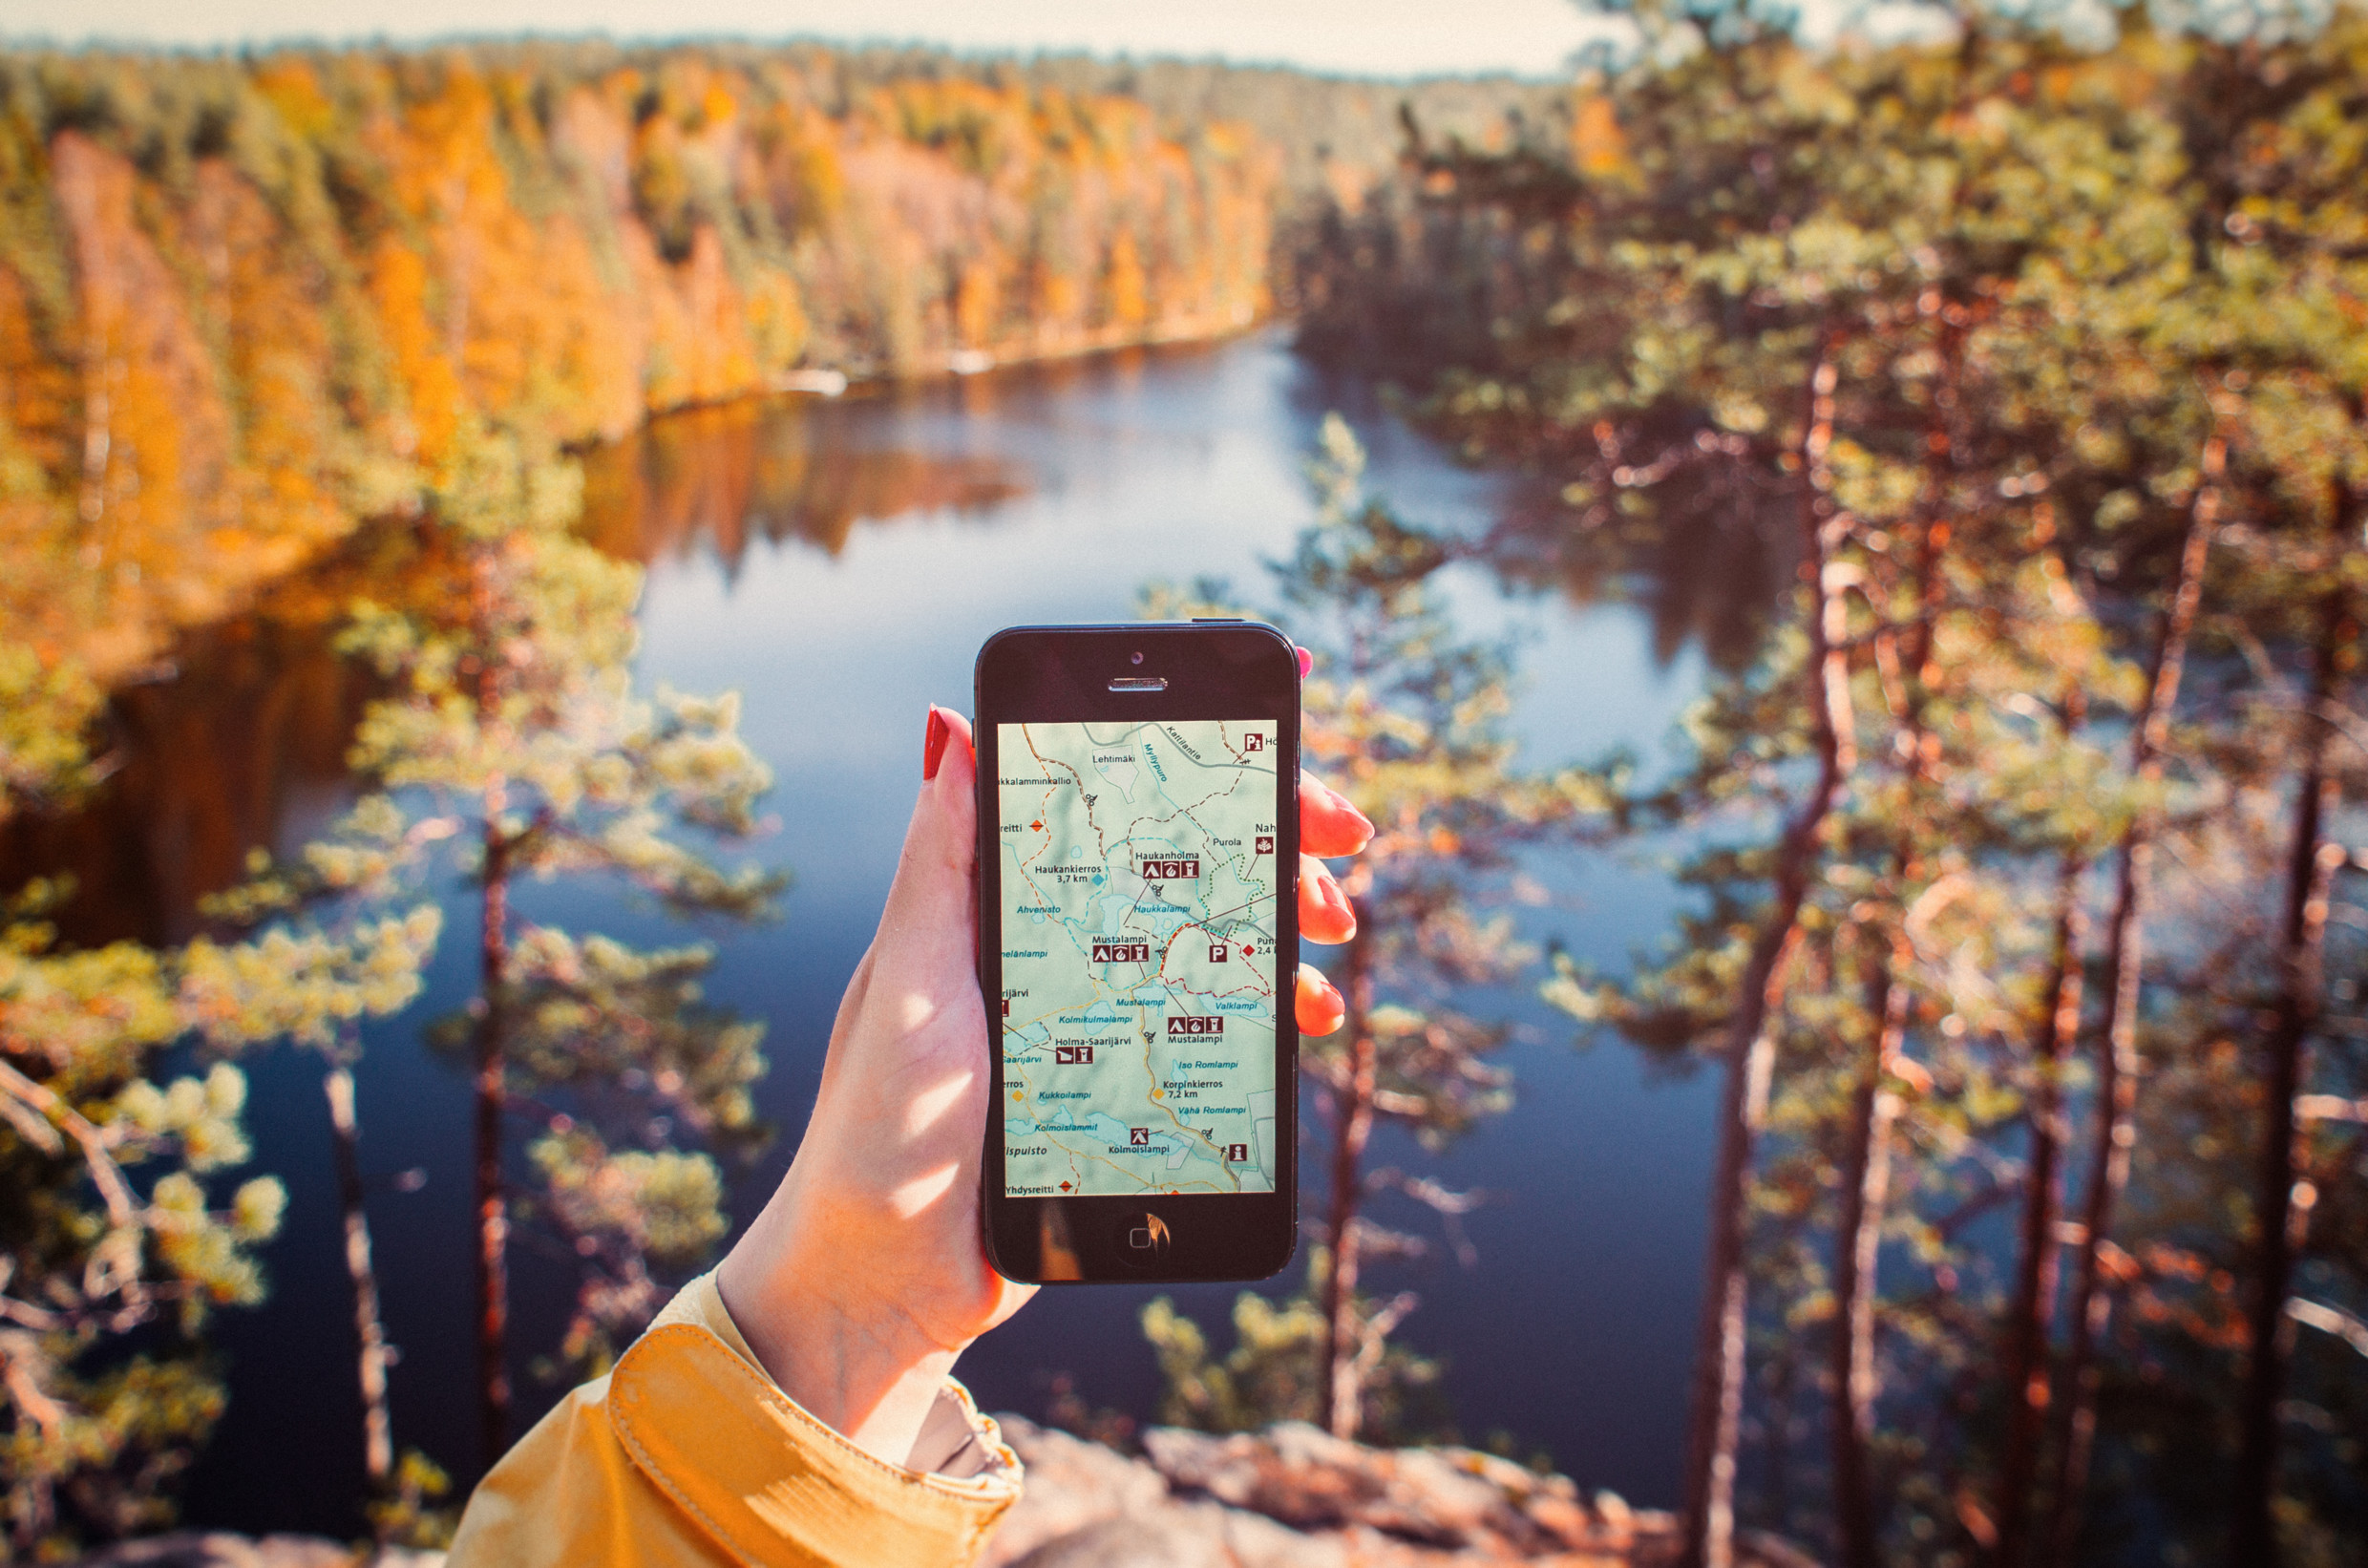 Retkeilijä katsoo puhelimesta karttaa syksyisessä luonnonpuistossa.